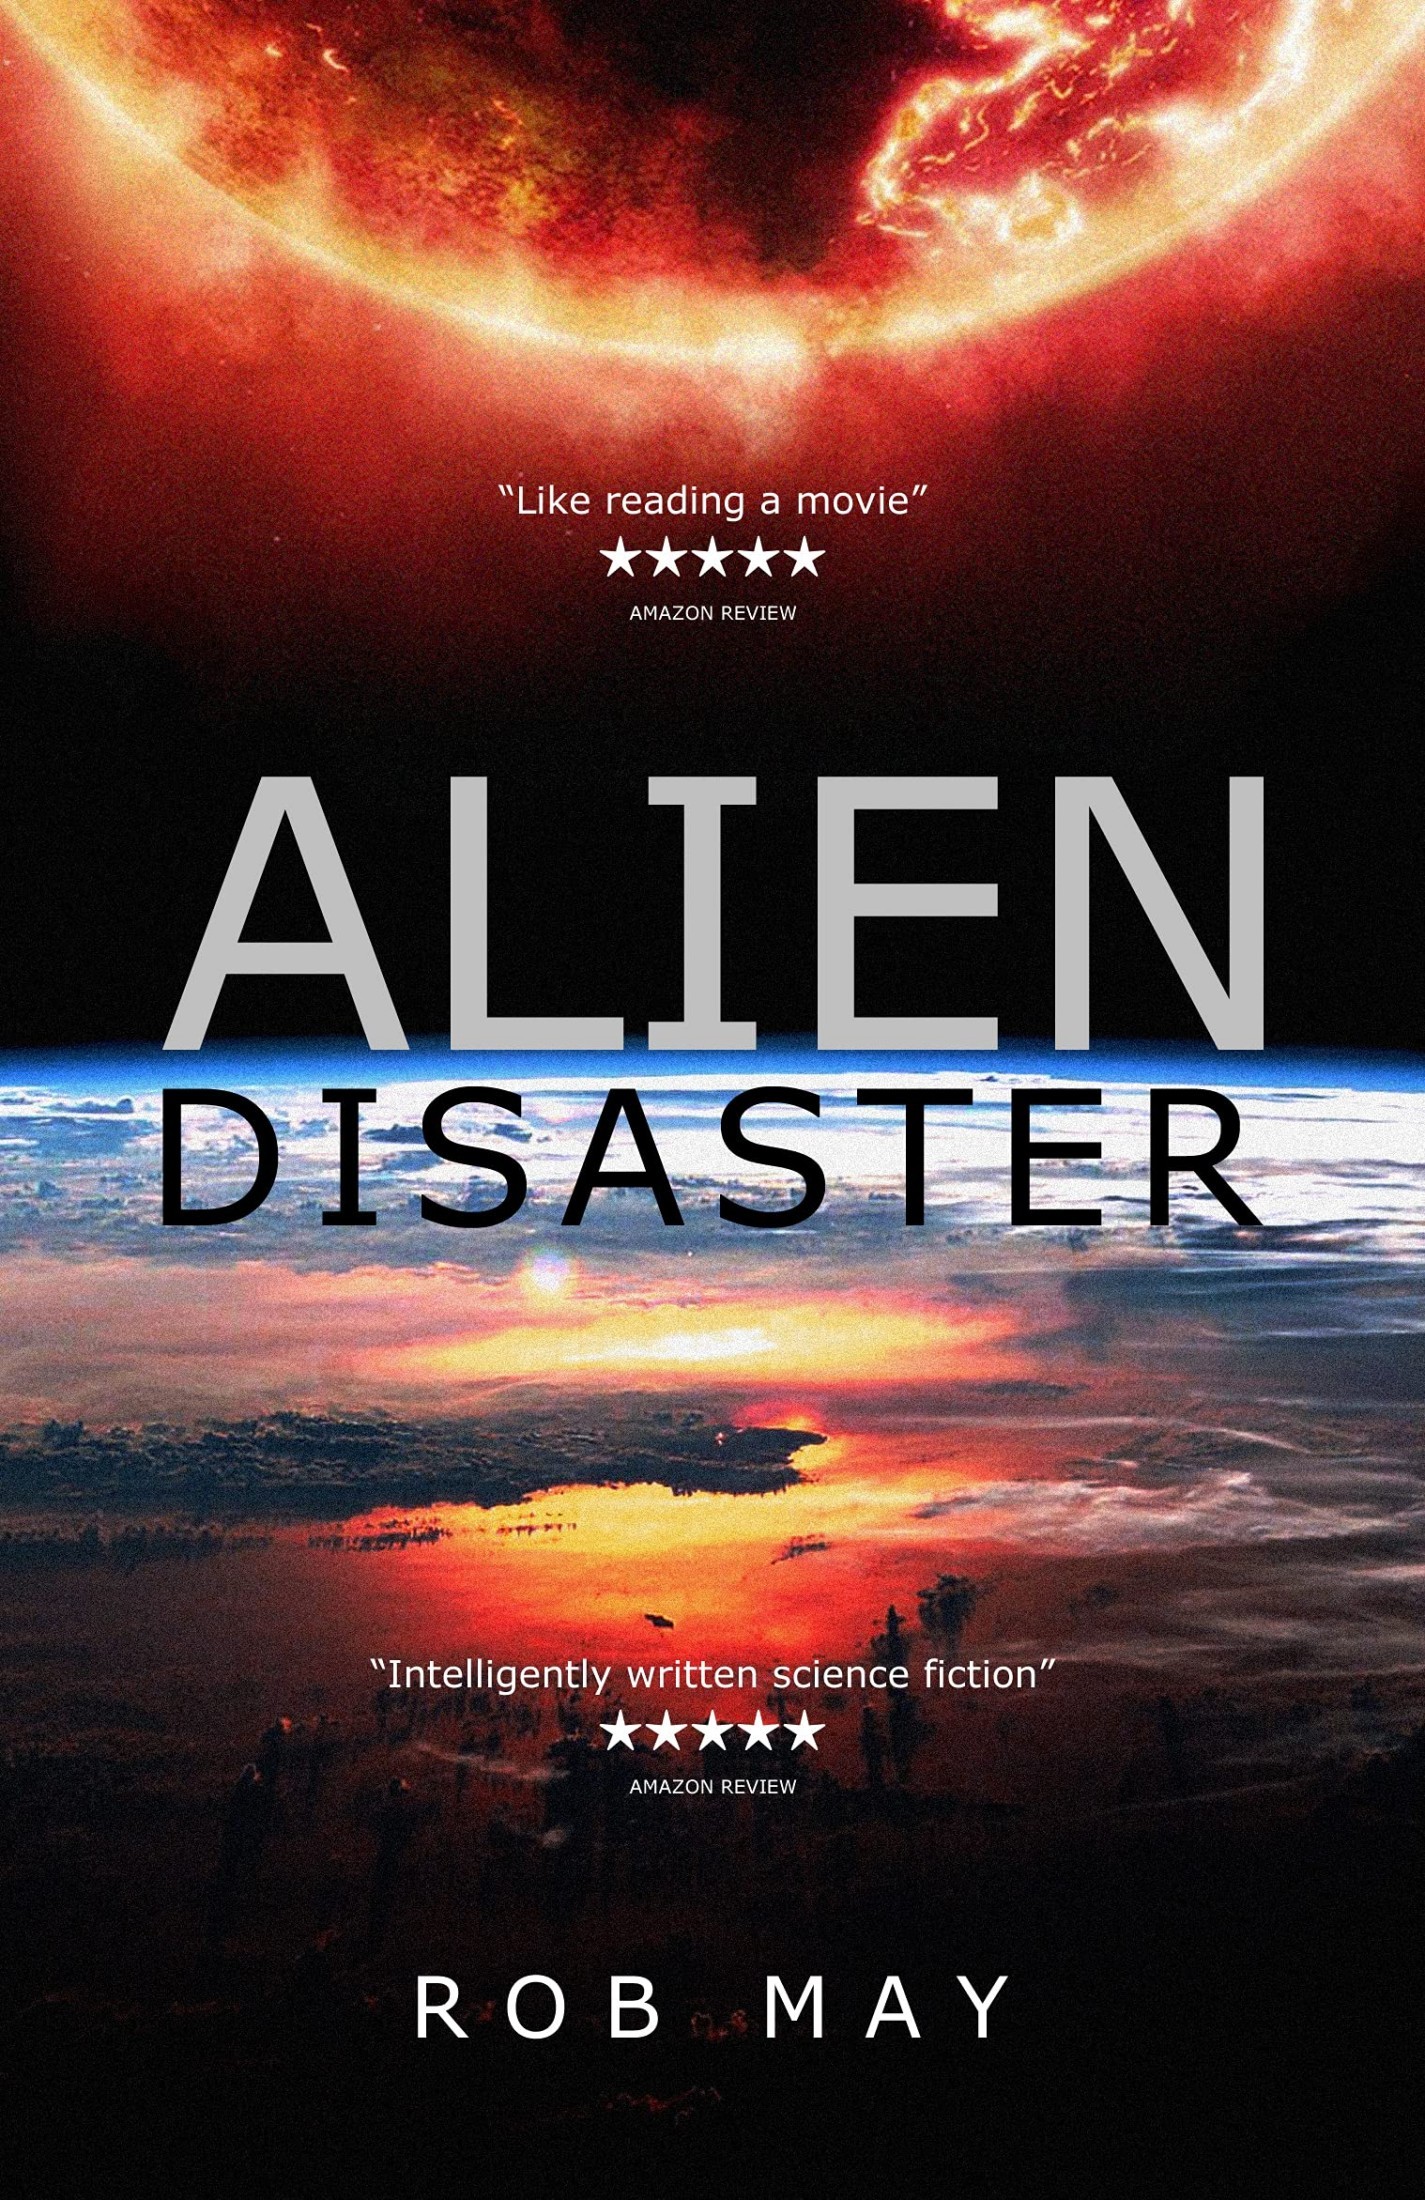 Alien Disaster